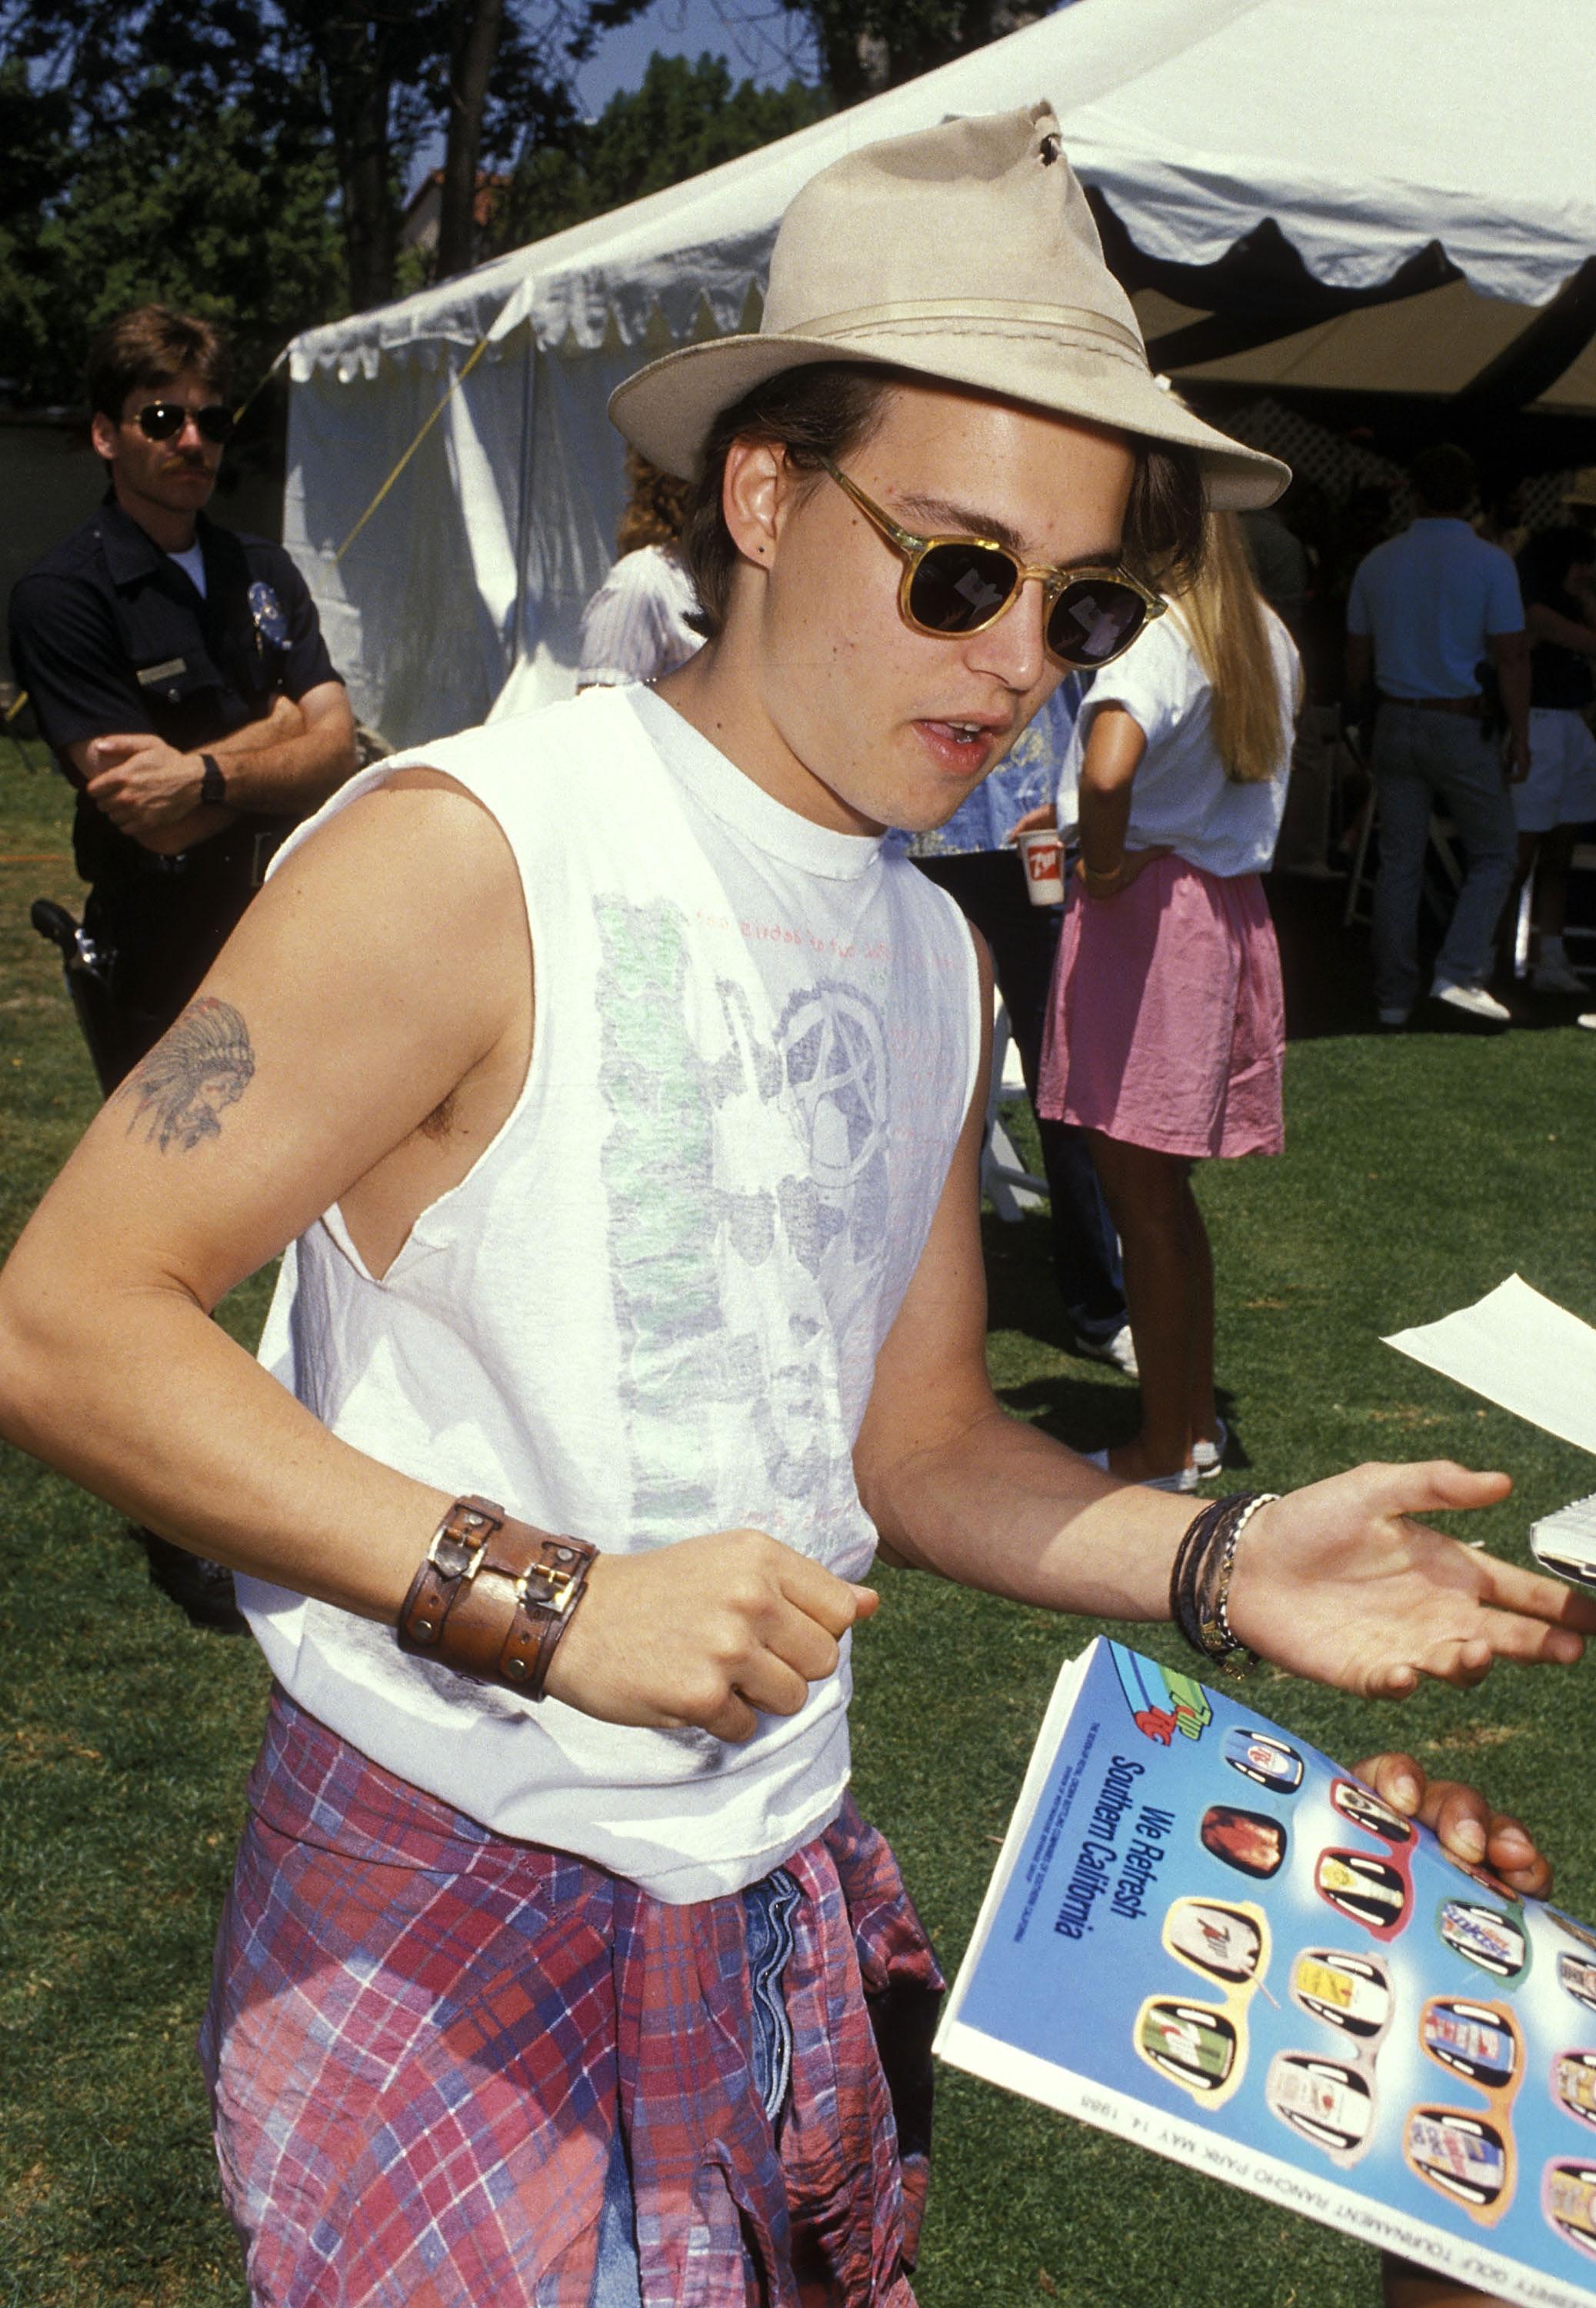 FAVORITTANTREKK: Hatt, armbånd, solbriller og en skjorte knytt rundt livet må være Depps favorittlook. Han har vært trofast mot denne stilen i alle år. Her er han i California i 1988.